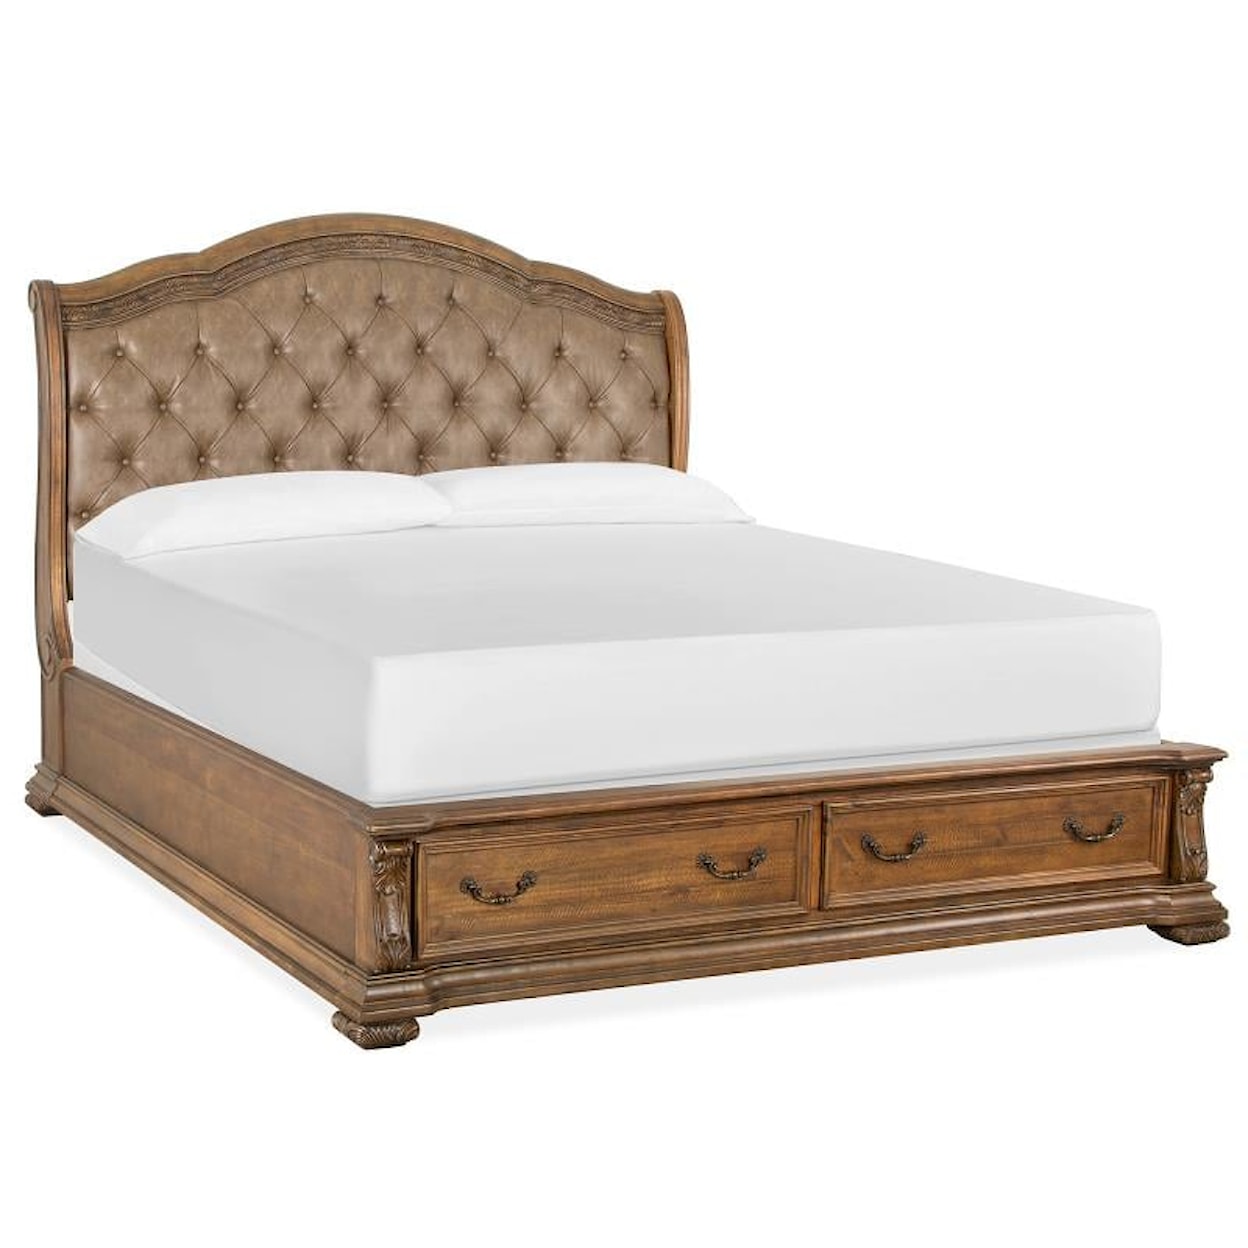 Magnussen Home Durango Bedroom Queen Upholstered Sleigh Bed